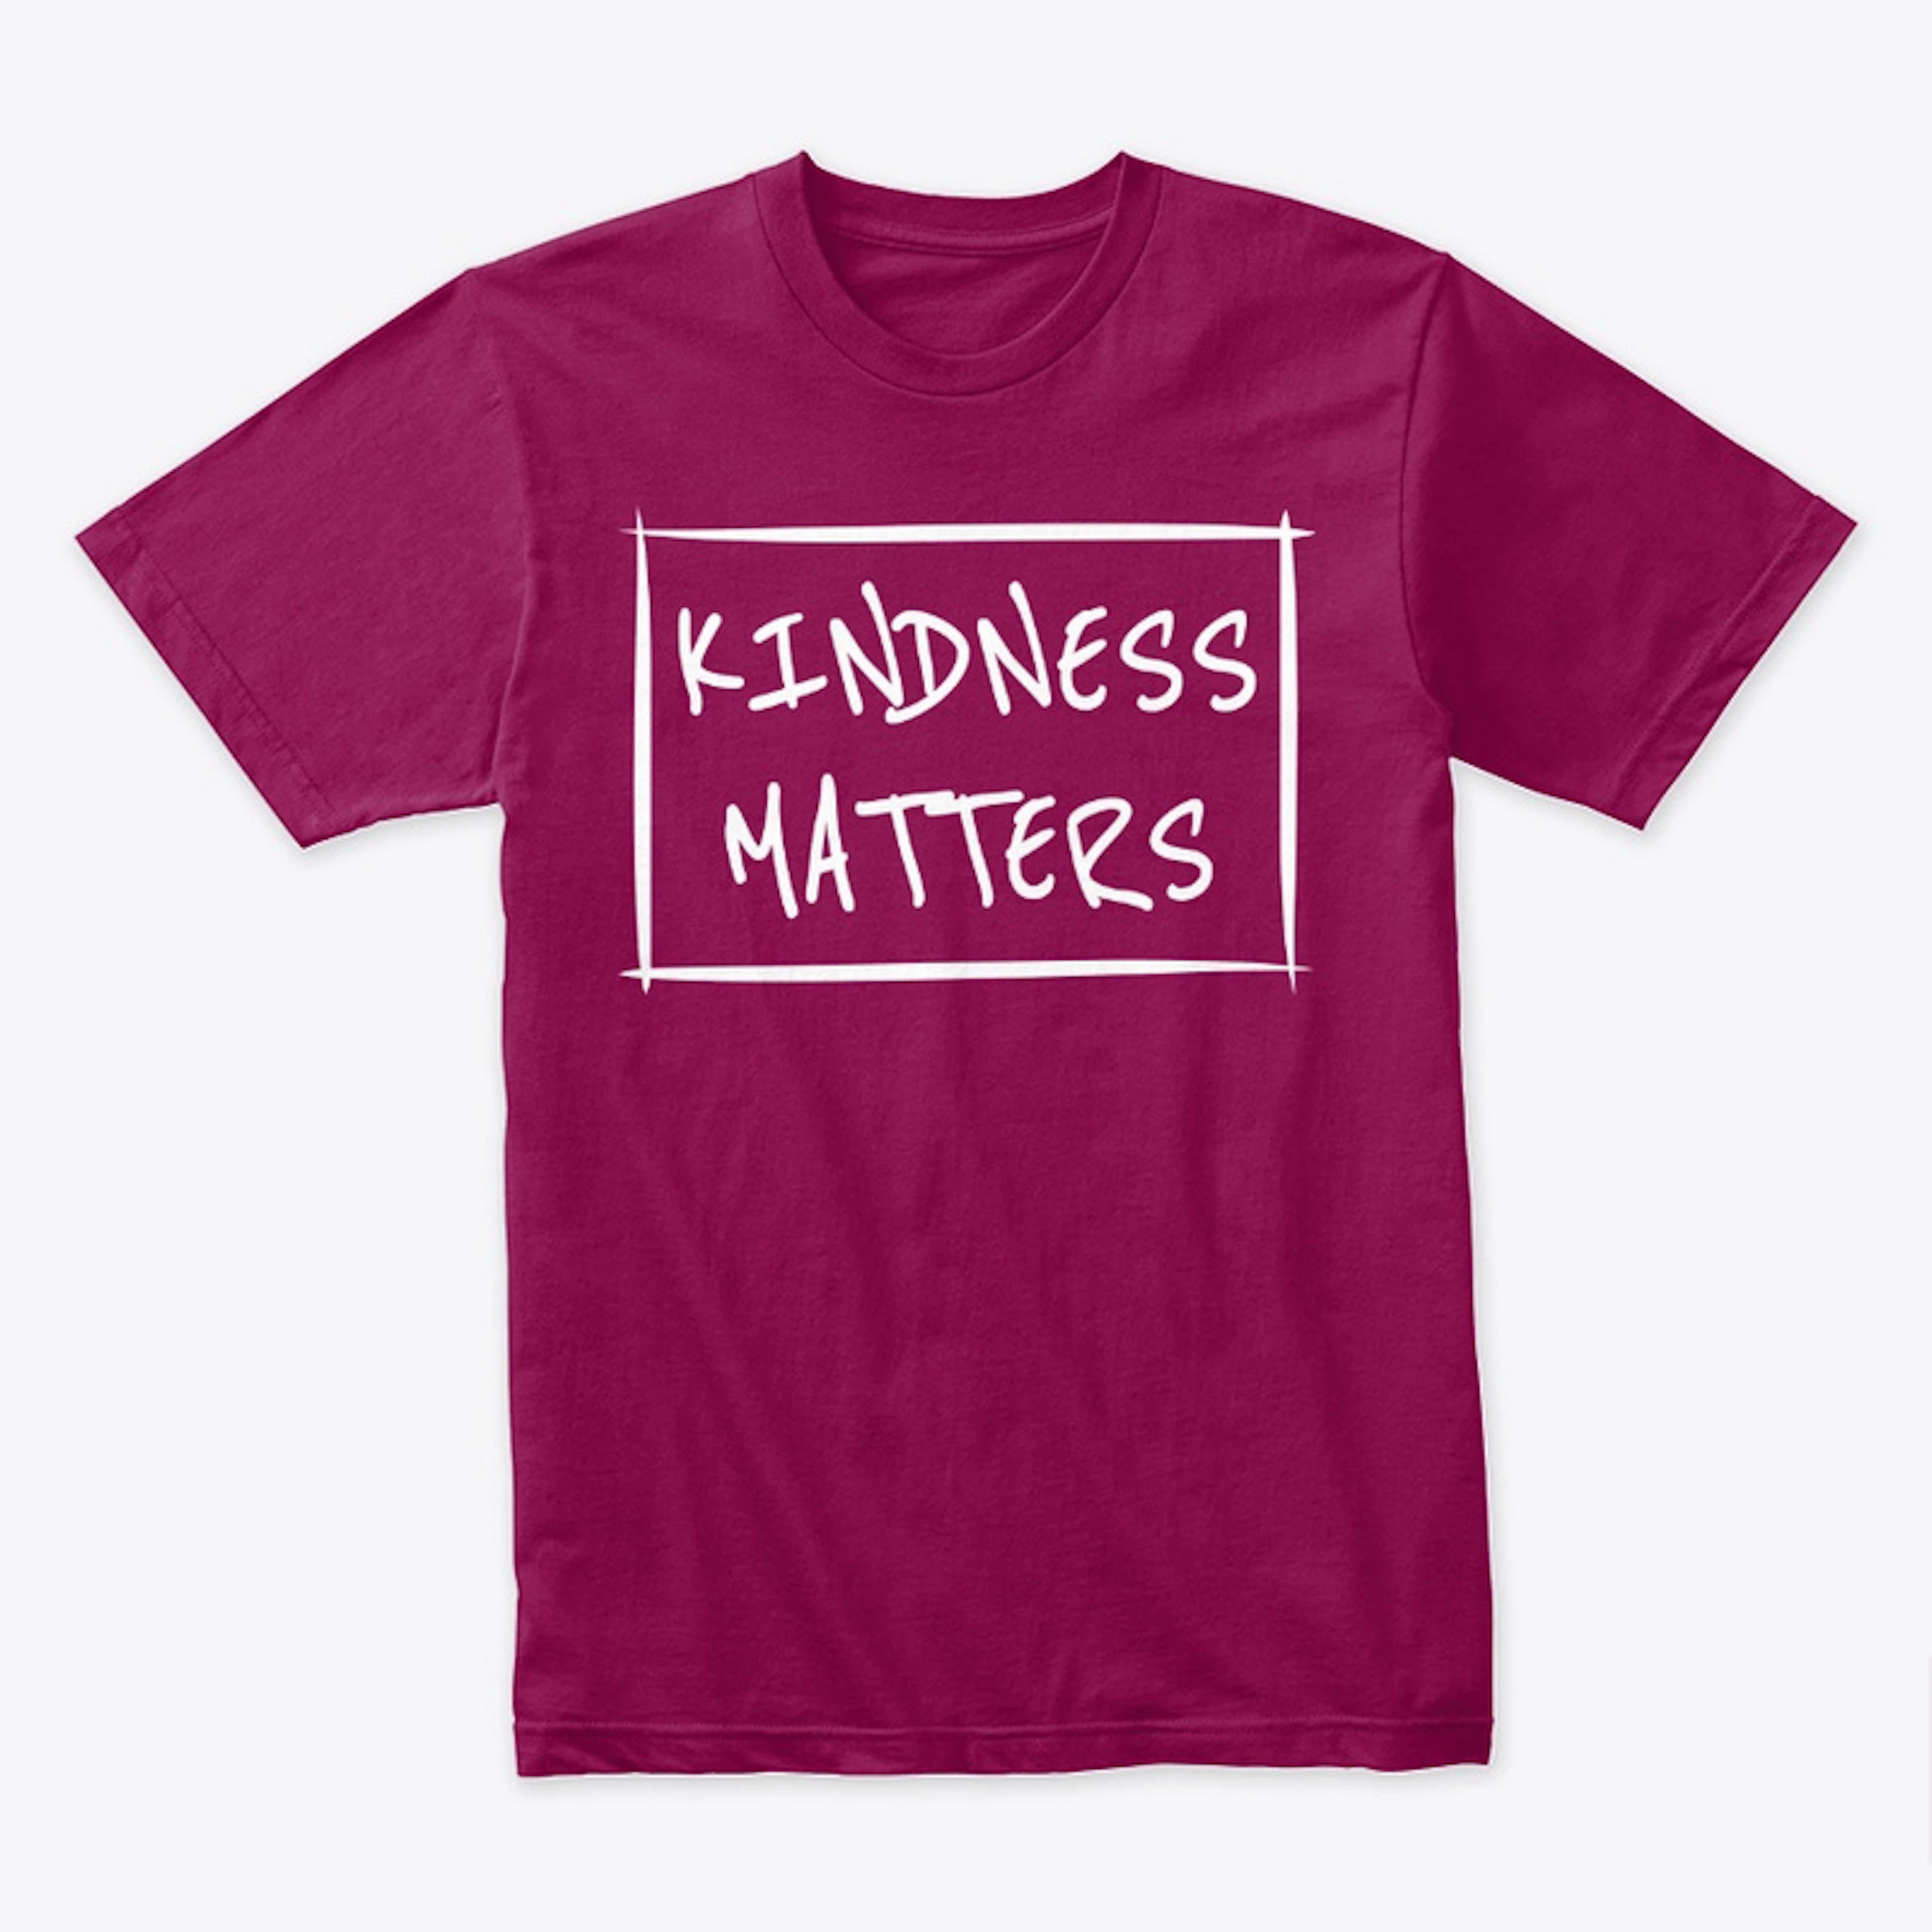 Kindness Matters Shirt